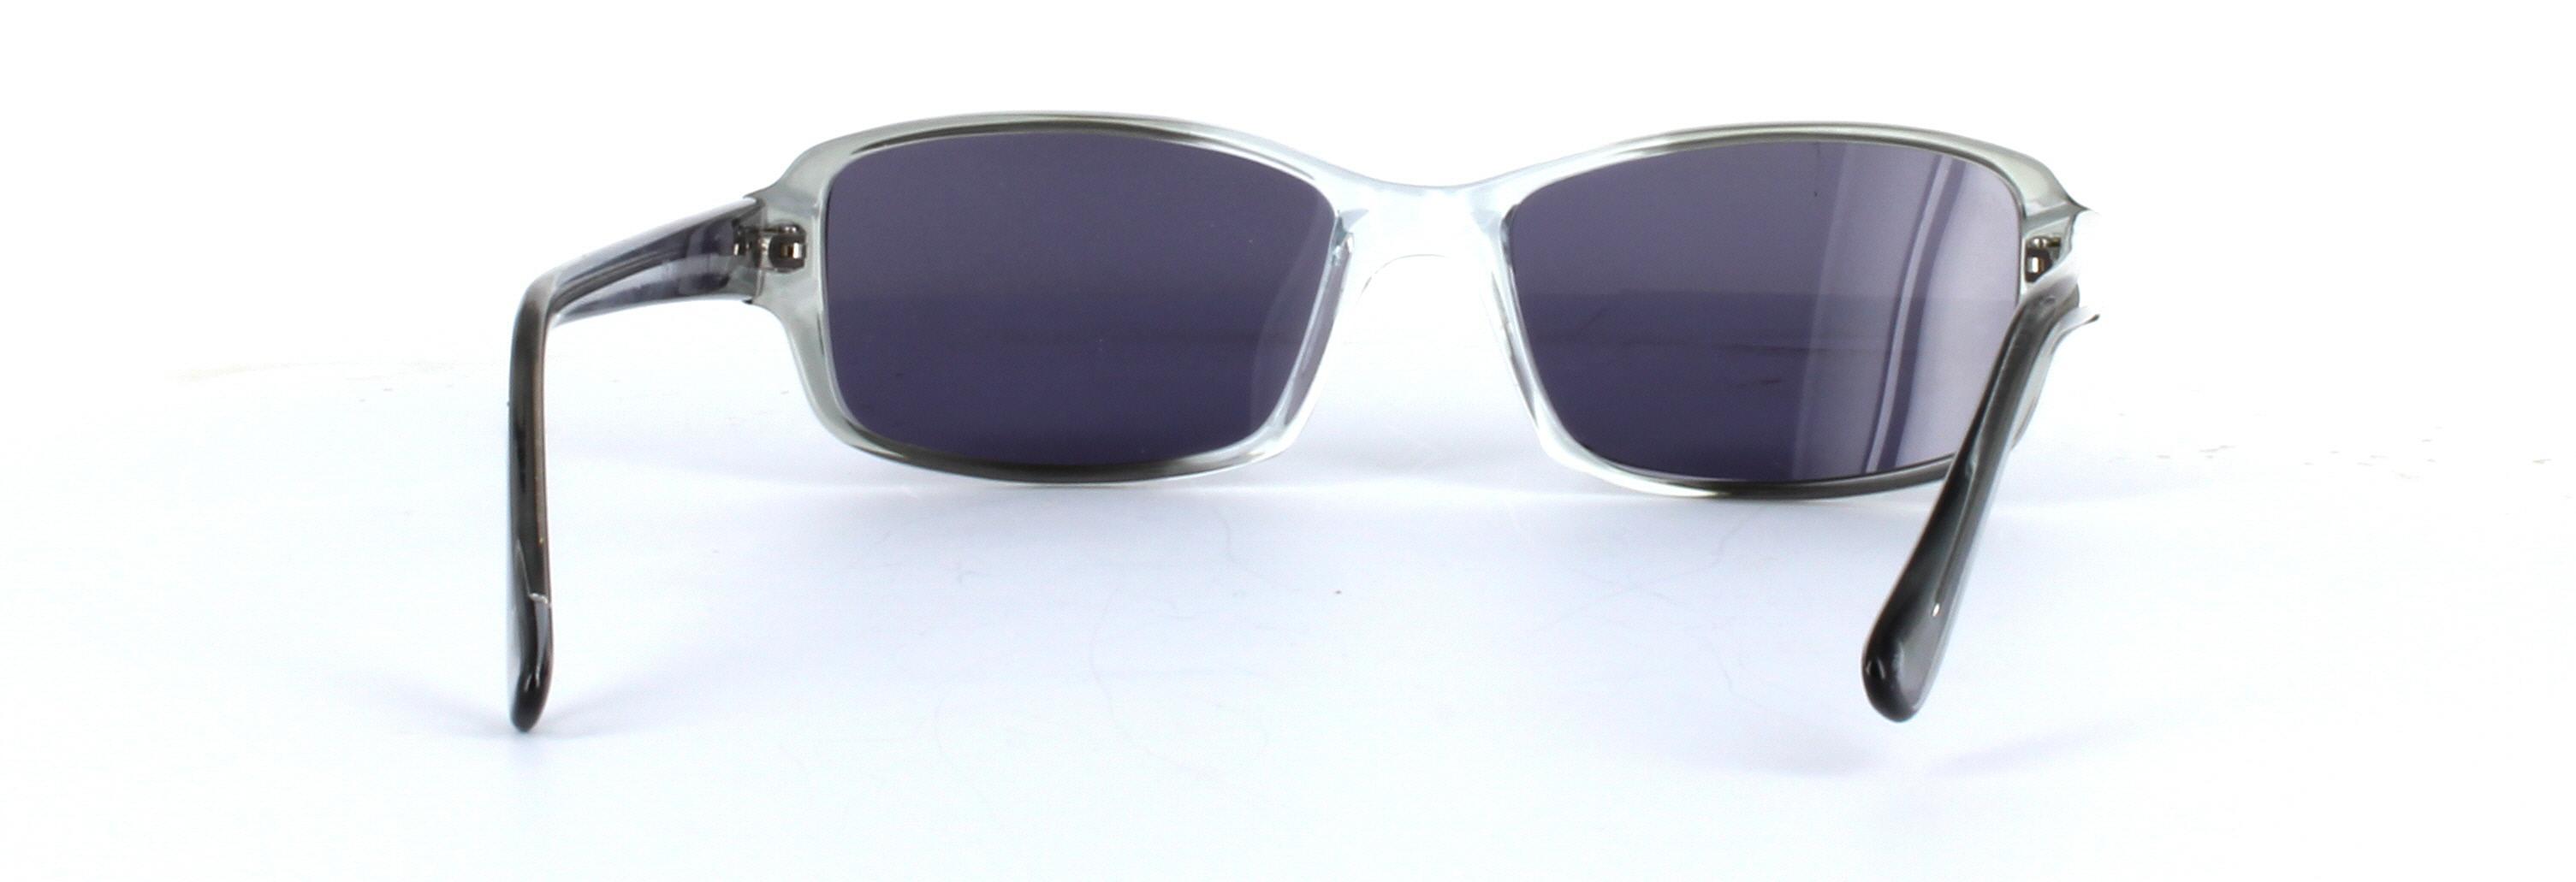 Chico Grey Full Rim Rectangular Plastic Sunglasses - Image View 3